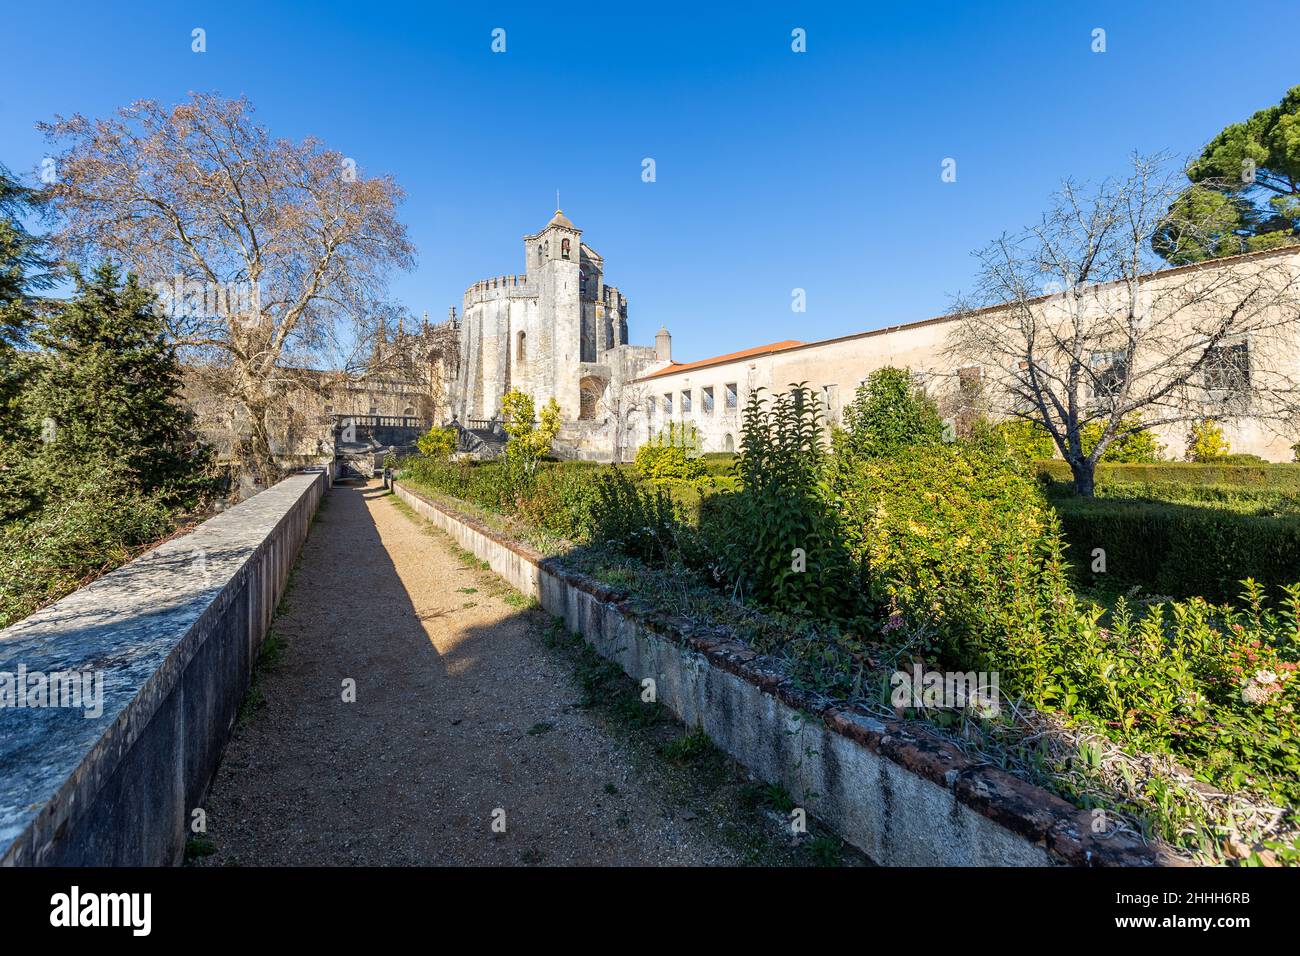 Convento de Cristo o 'Convento de Cristo' es un convento católico romano en la cima de la colina, en Tomar, Portugal, con una ornada esculpida estilo manuelina. Foto de stock